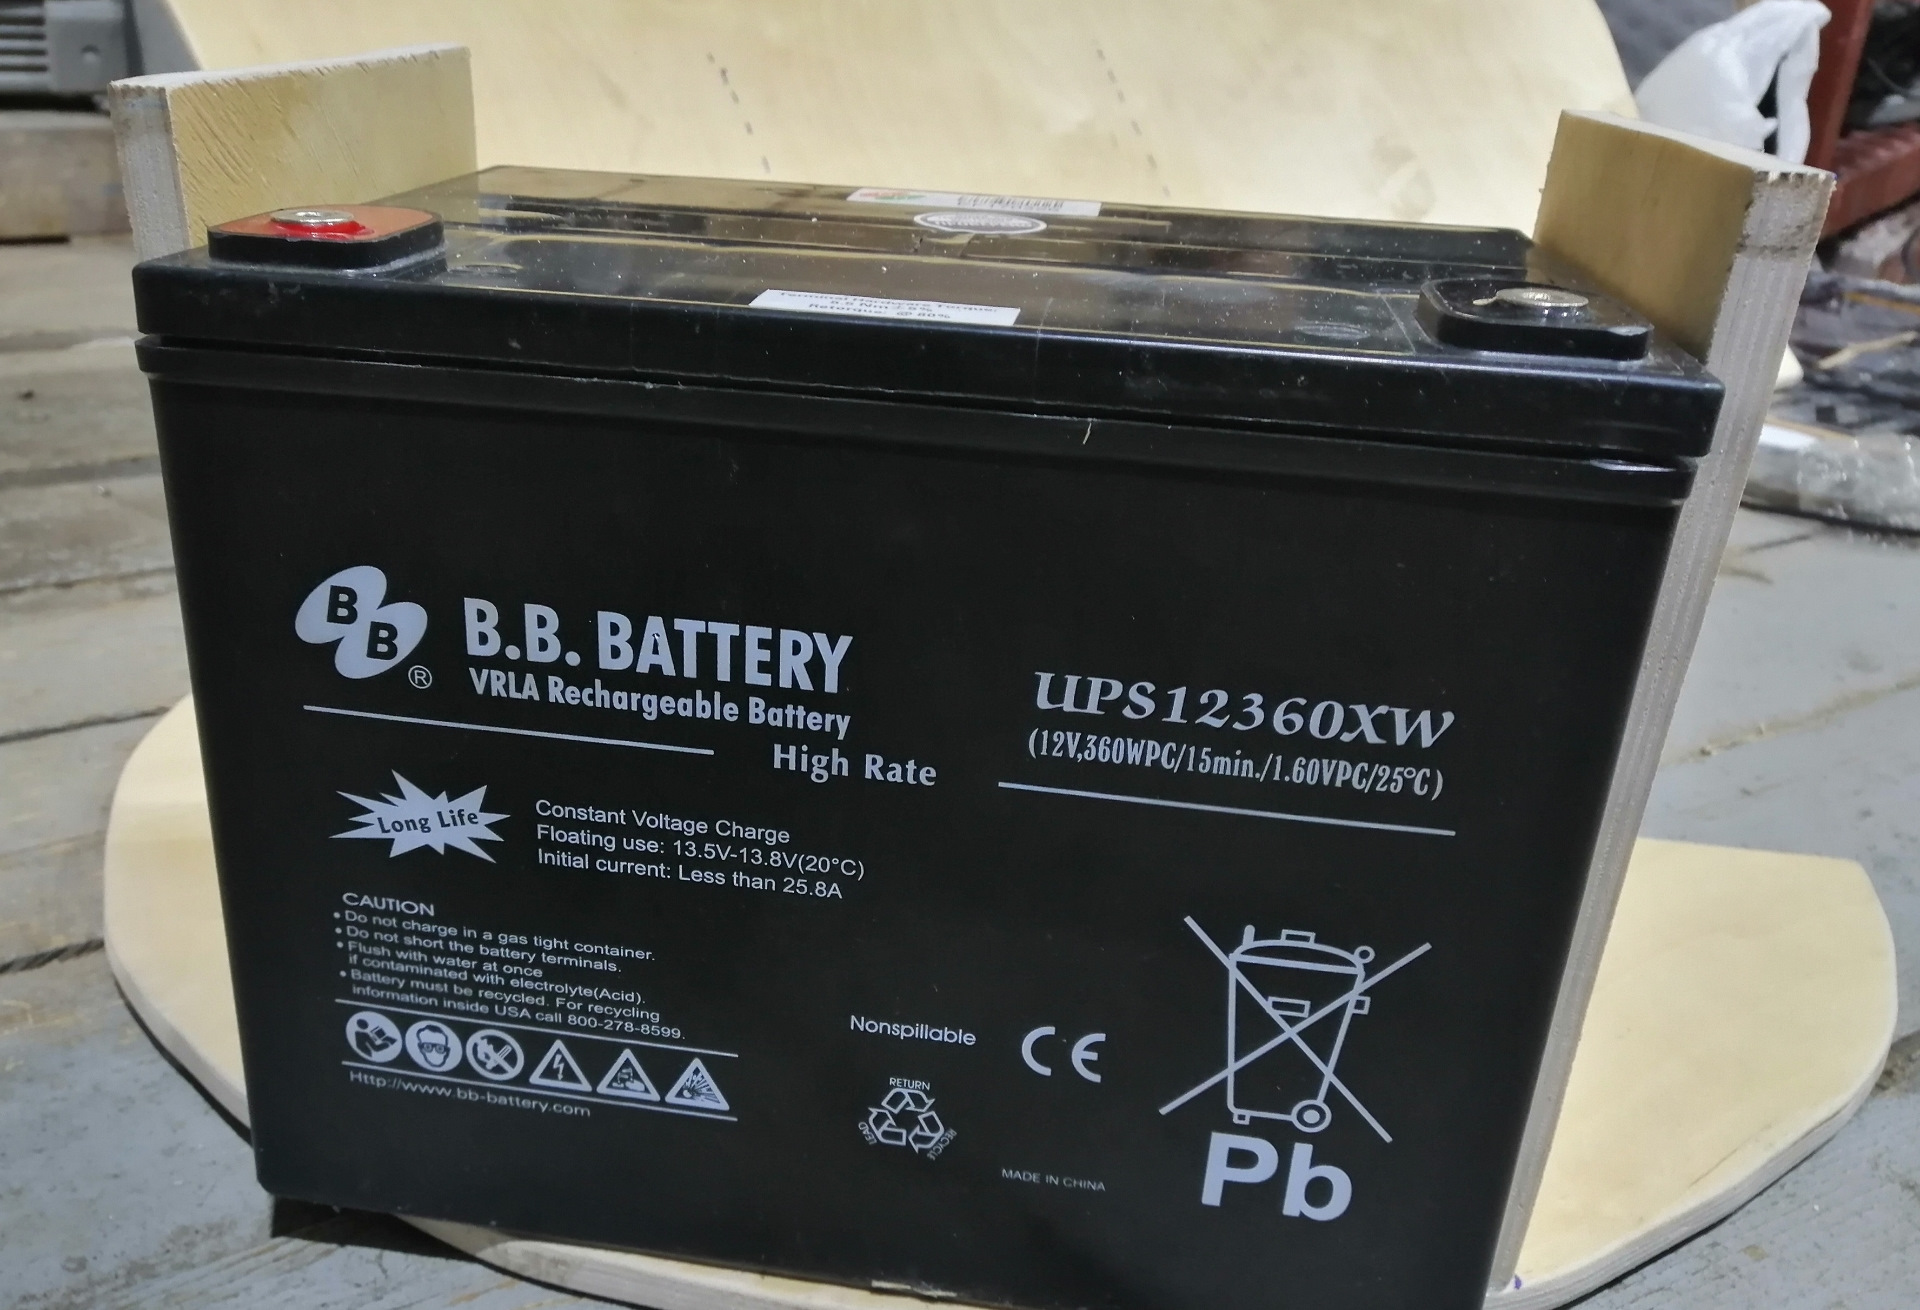 B b battery. B.B. Battery ups 12440w. Battery ups 12360 7 f2 12v 360 w. BB Battery ups 12540w. Ups 12440w.